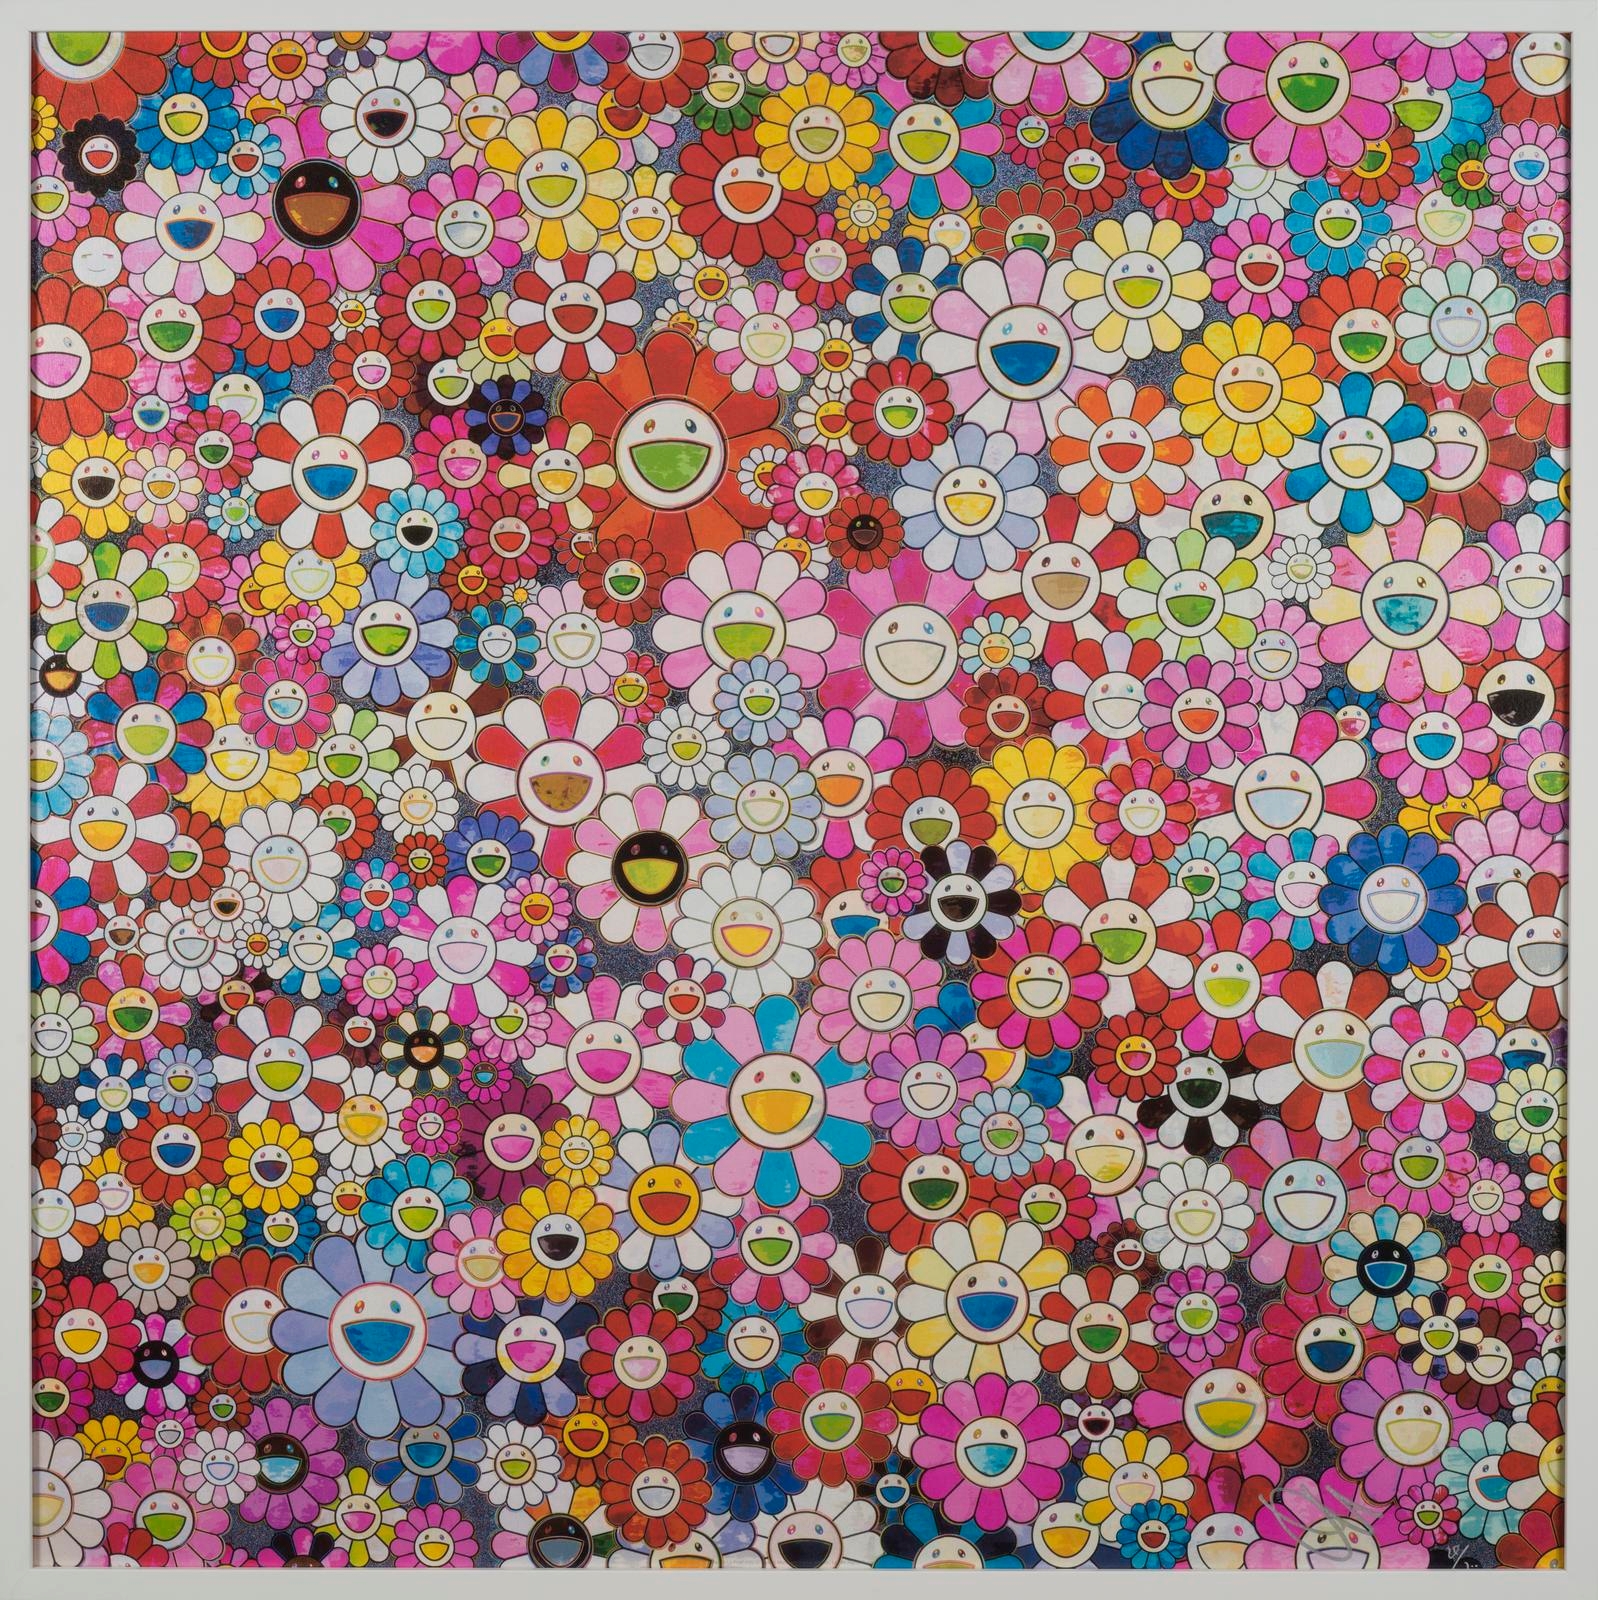 Flower Belt by Takashi Murakami and Virgil Abloh on artnet